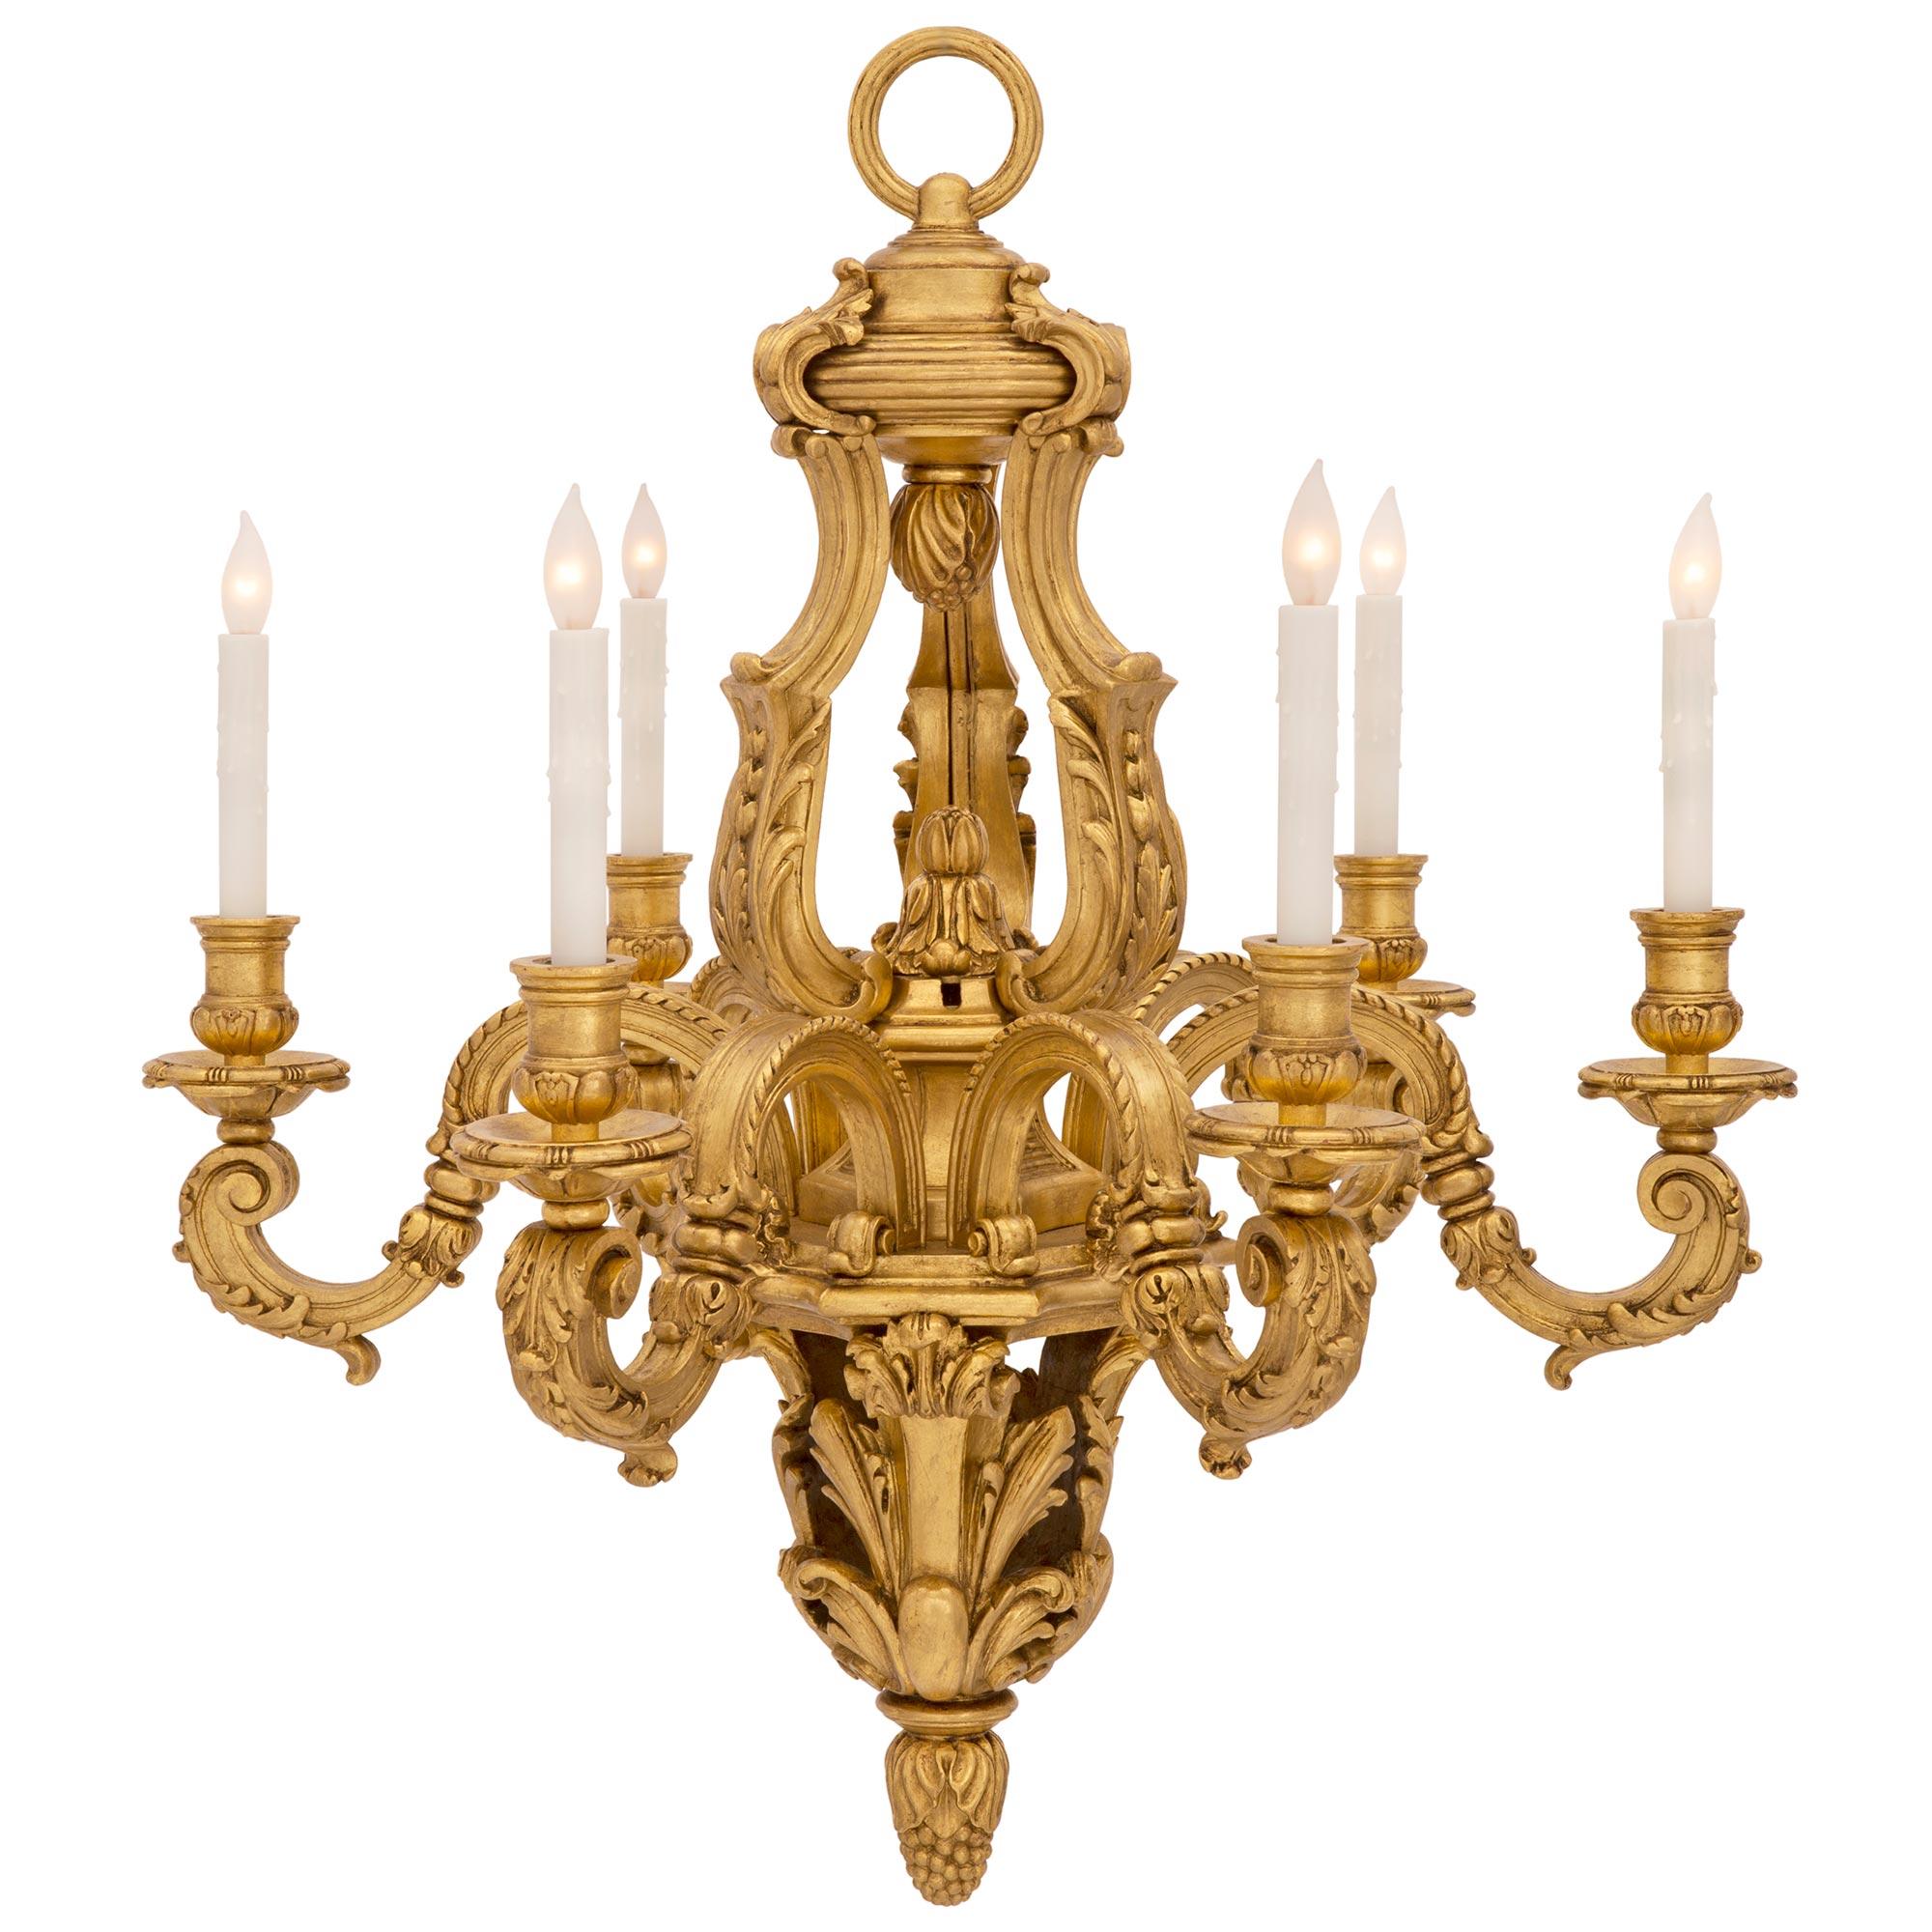 Un beau lustre italien du 19ème siècle de grande qualité en bois doré de style Louis XV. Le lustre à six bras est centré par un impressionnant épi de faîtage inférieur finement détaillé avec de grandes feuilles d'acanthe percées et richement